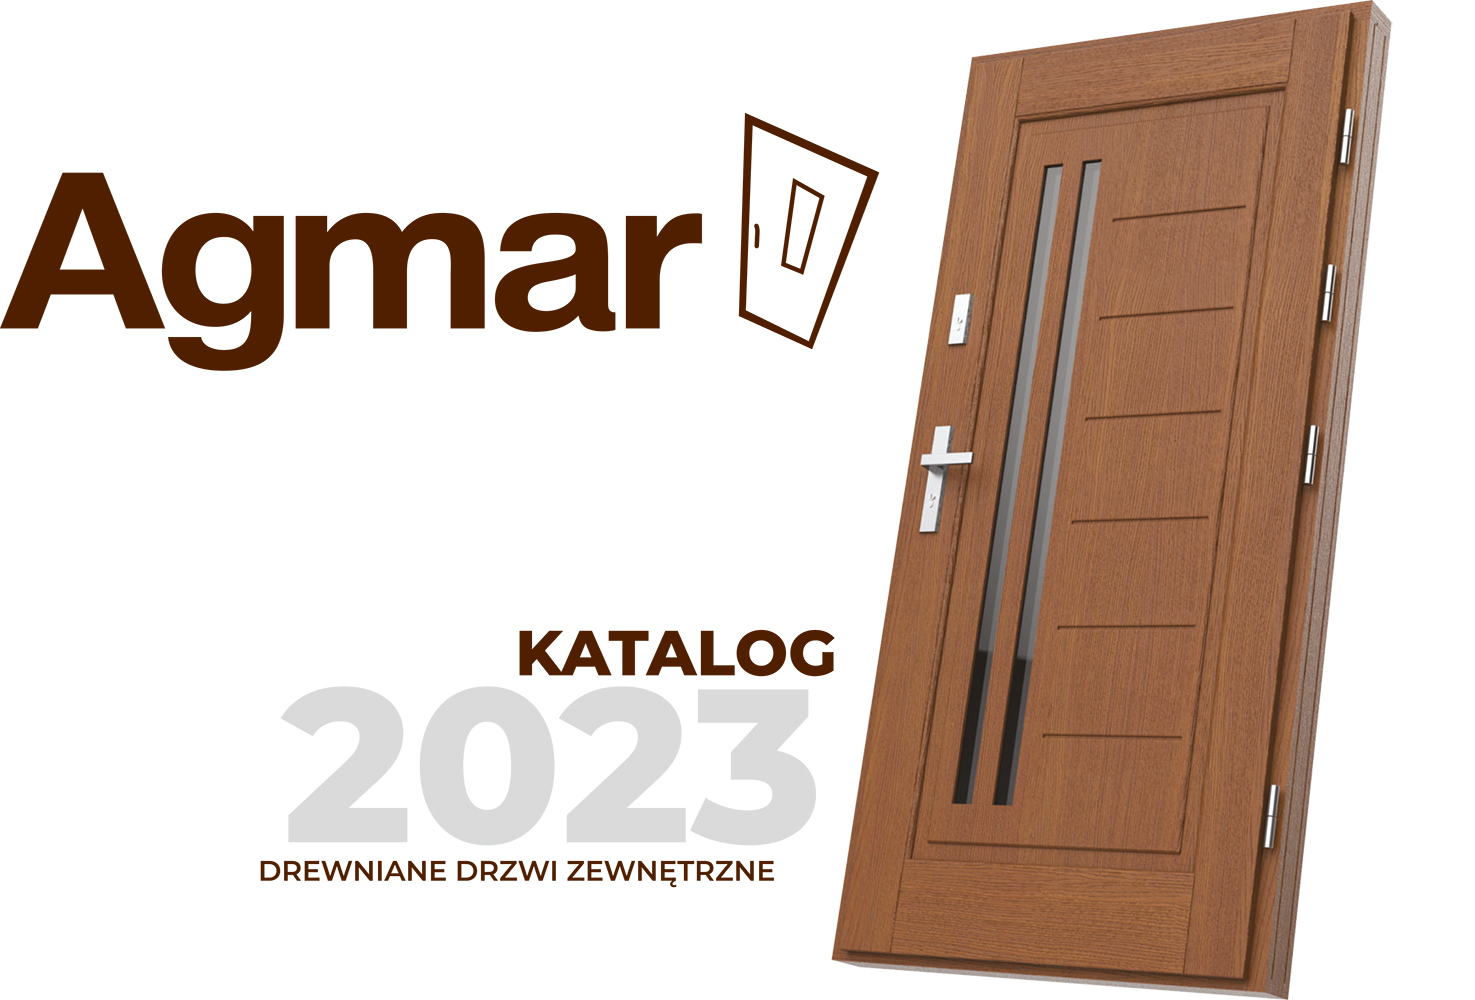 AGMAR-Katalog-2023-Drzwi-Zewnetrzne--1